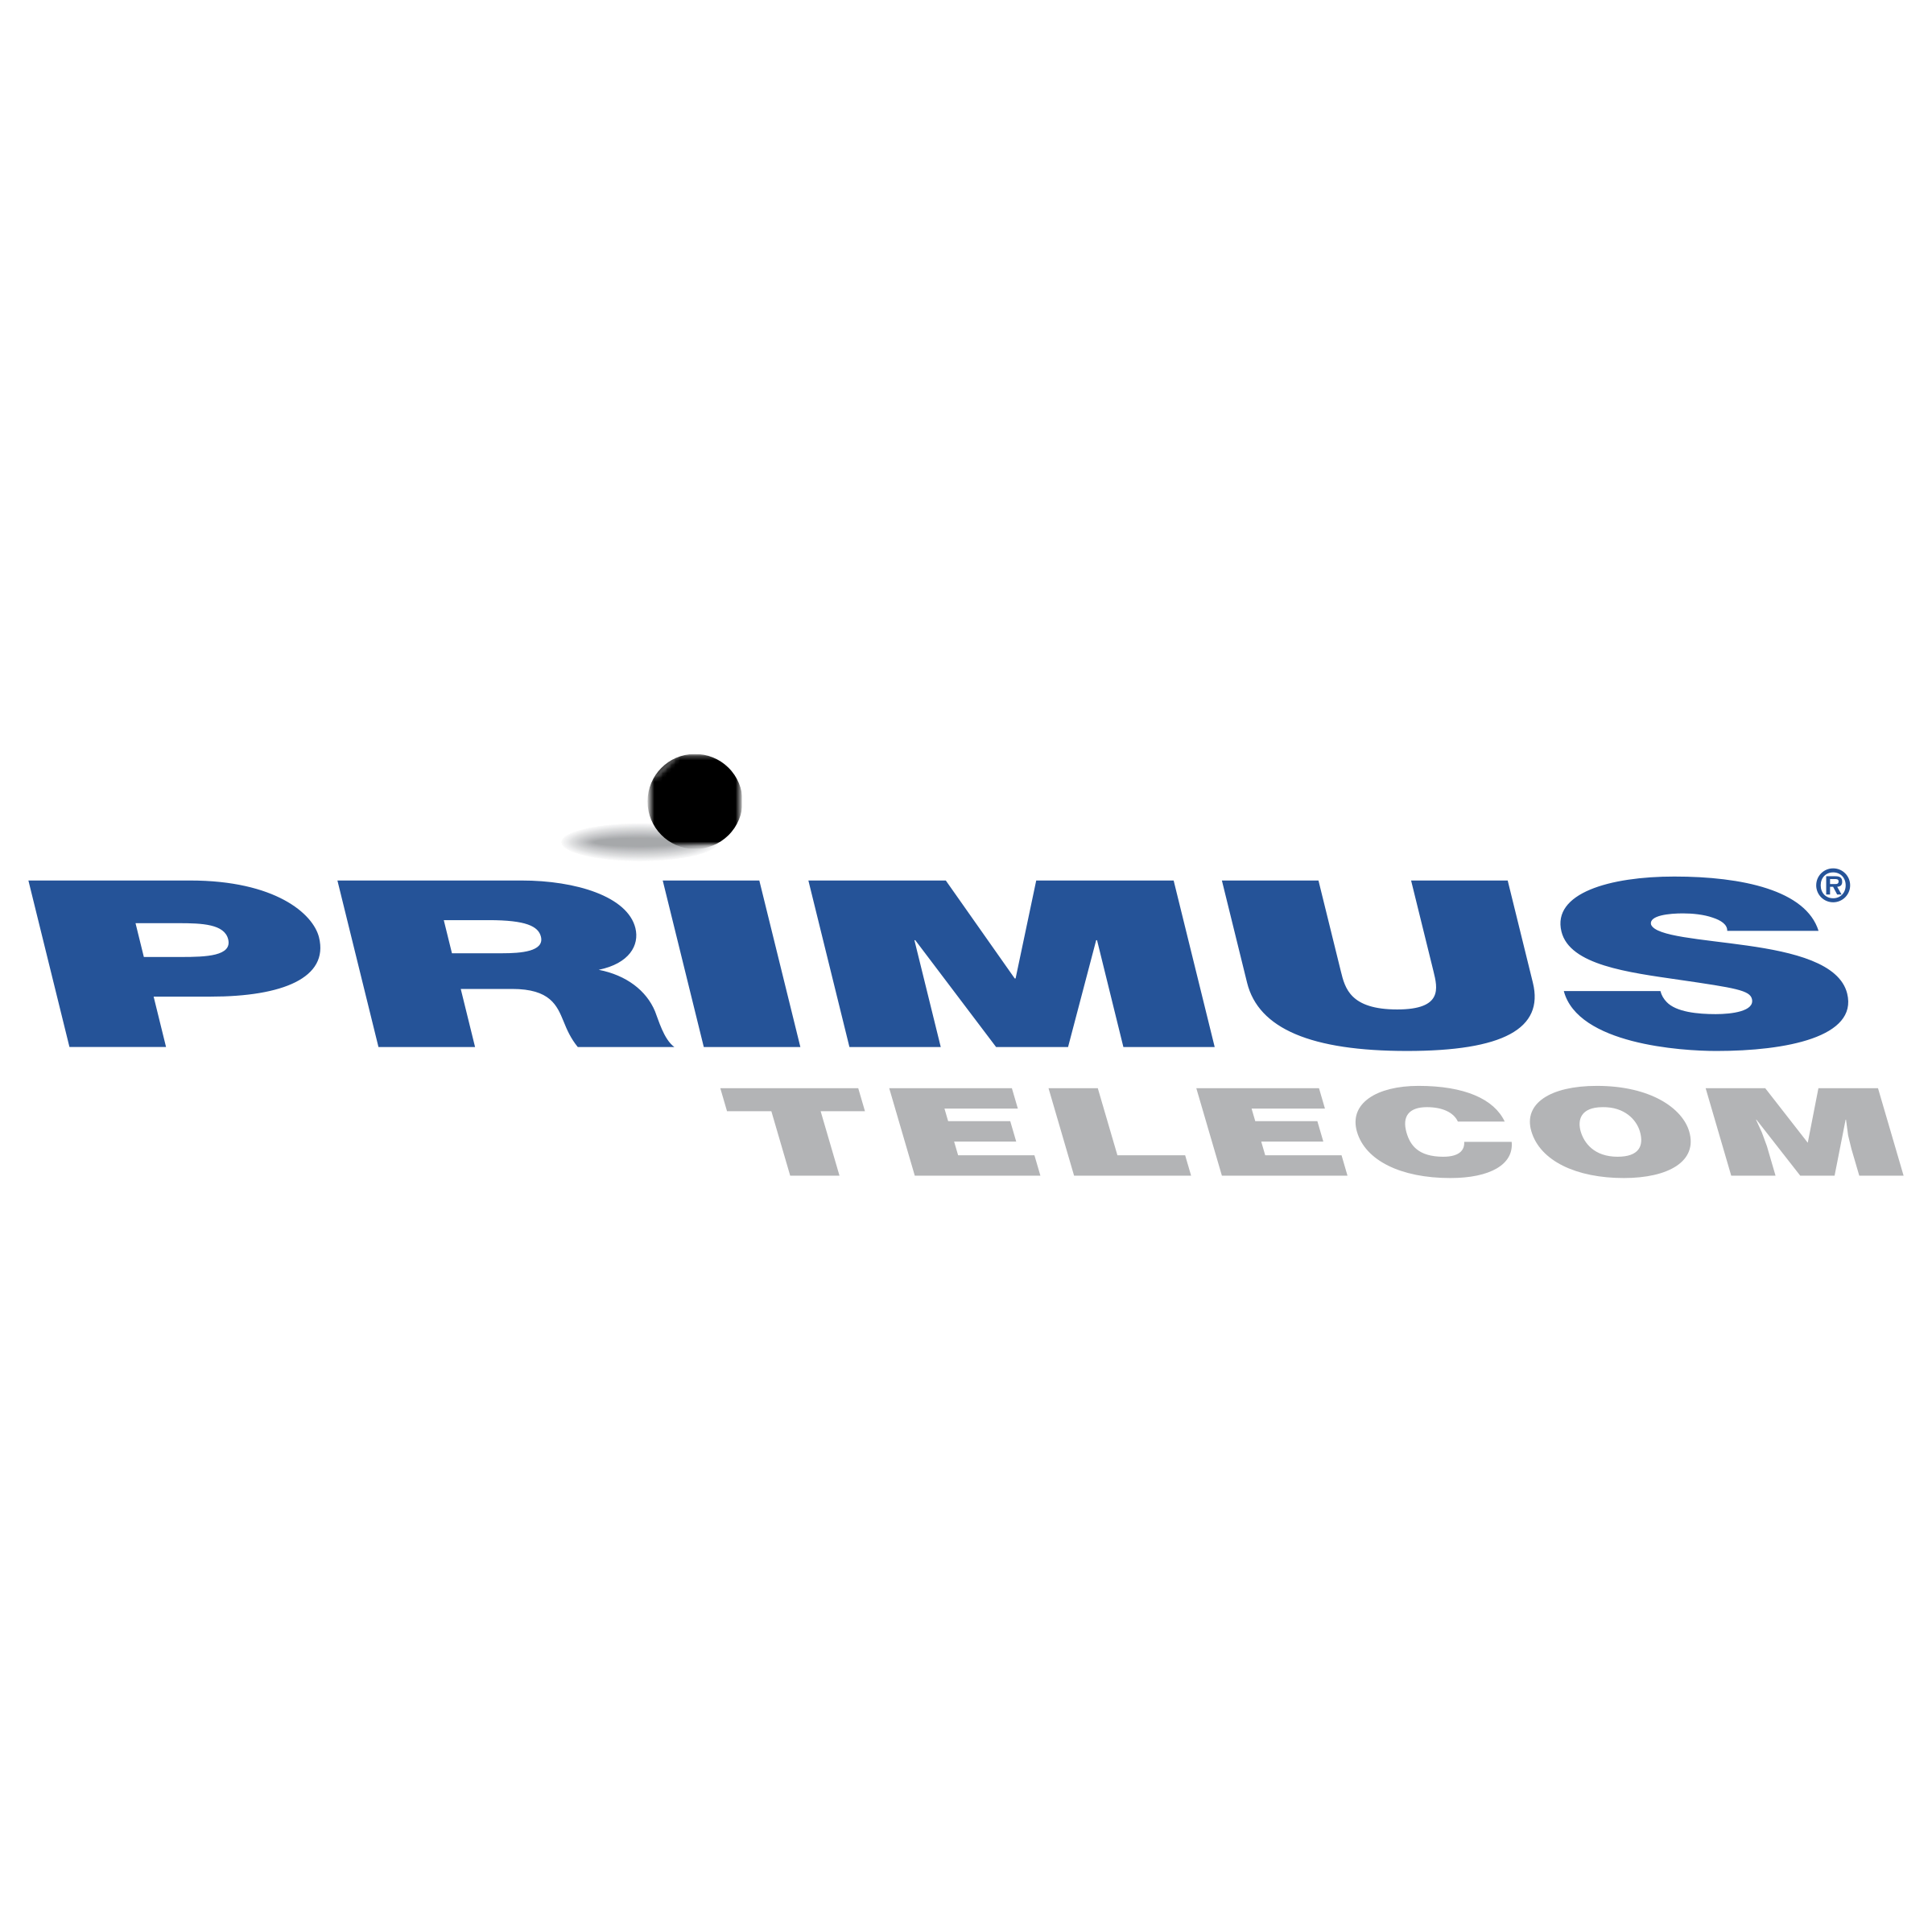 primus-telecom-logo-png-transparent.png